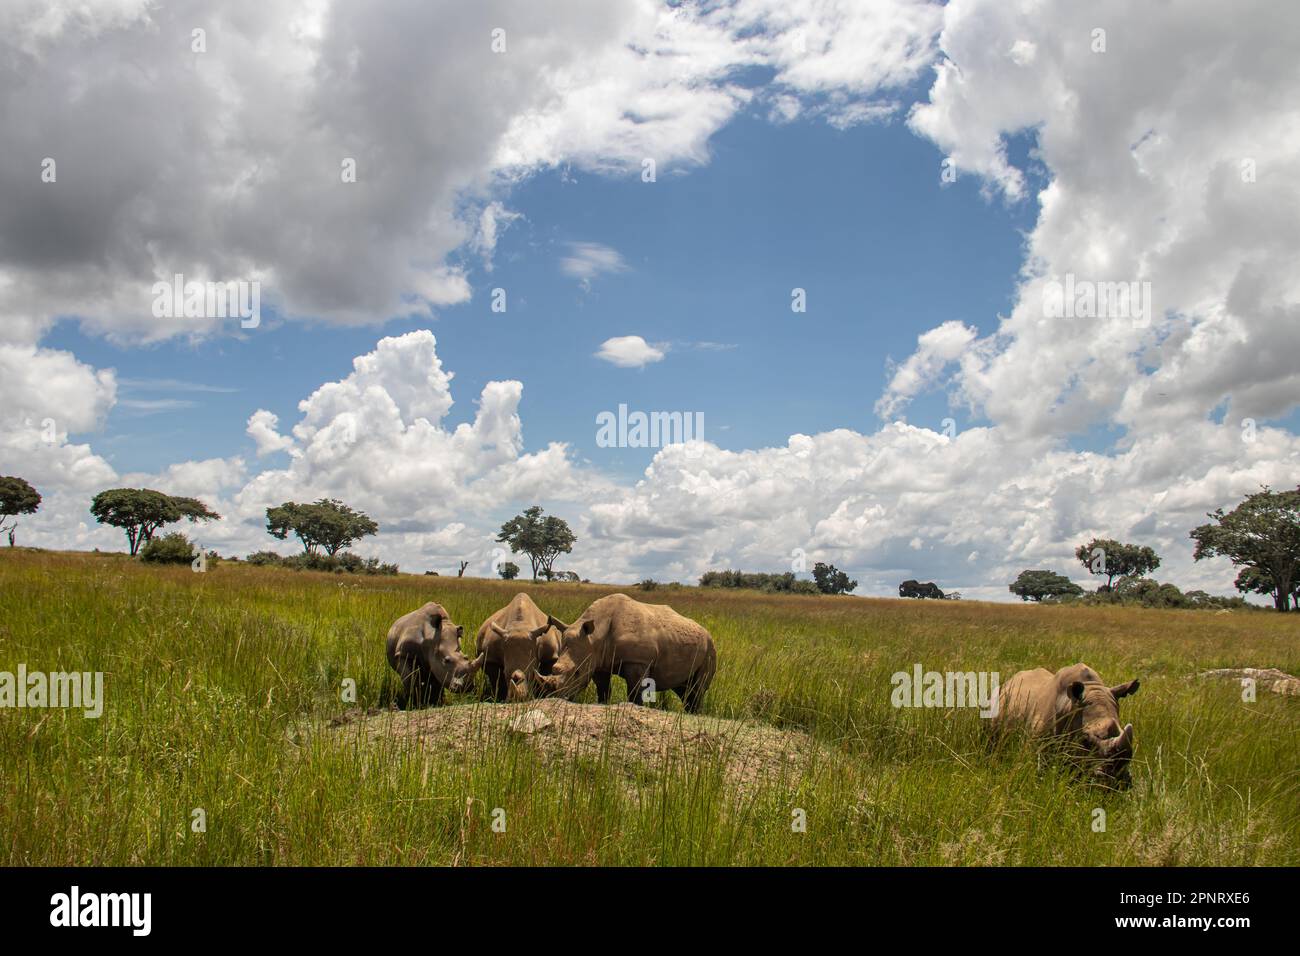 Rhinocéros blanc ou rhinocéros à lèvres carrées (Ceratotherium simum) à Imire Rhino & Wildlife Conservancy, Zimbabwe, espèce en voie de disparition Banque D'Images